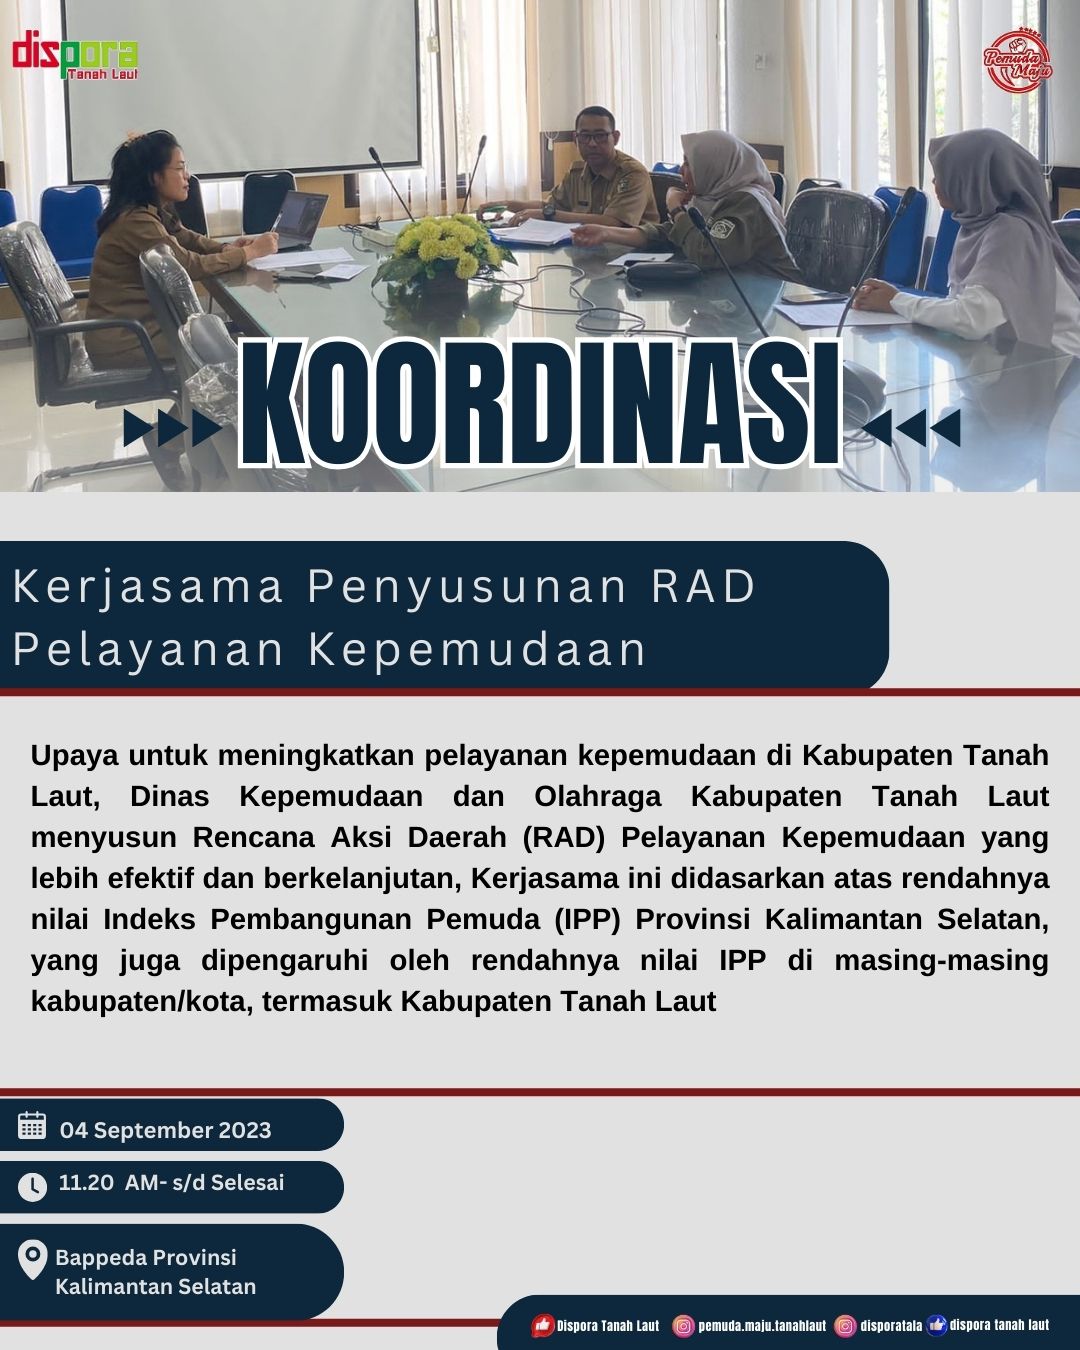 Rapat Koordinasi Kerja sama dengan Bappeda Provinsi Kalimantan Selatan